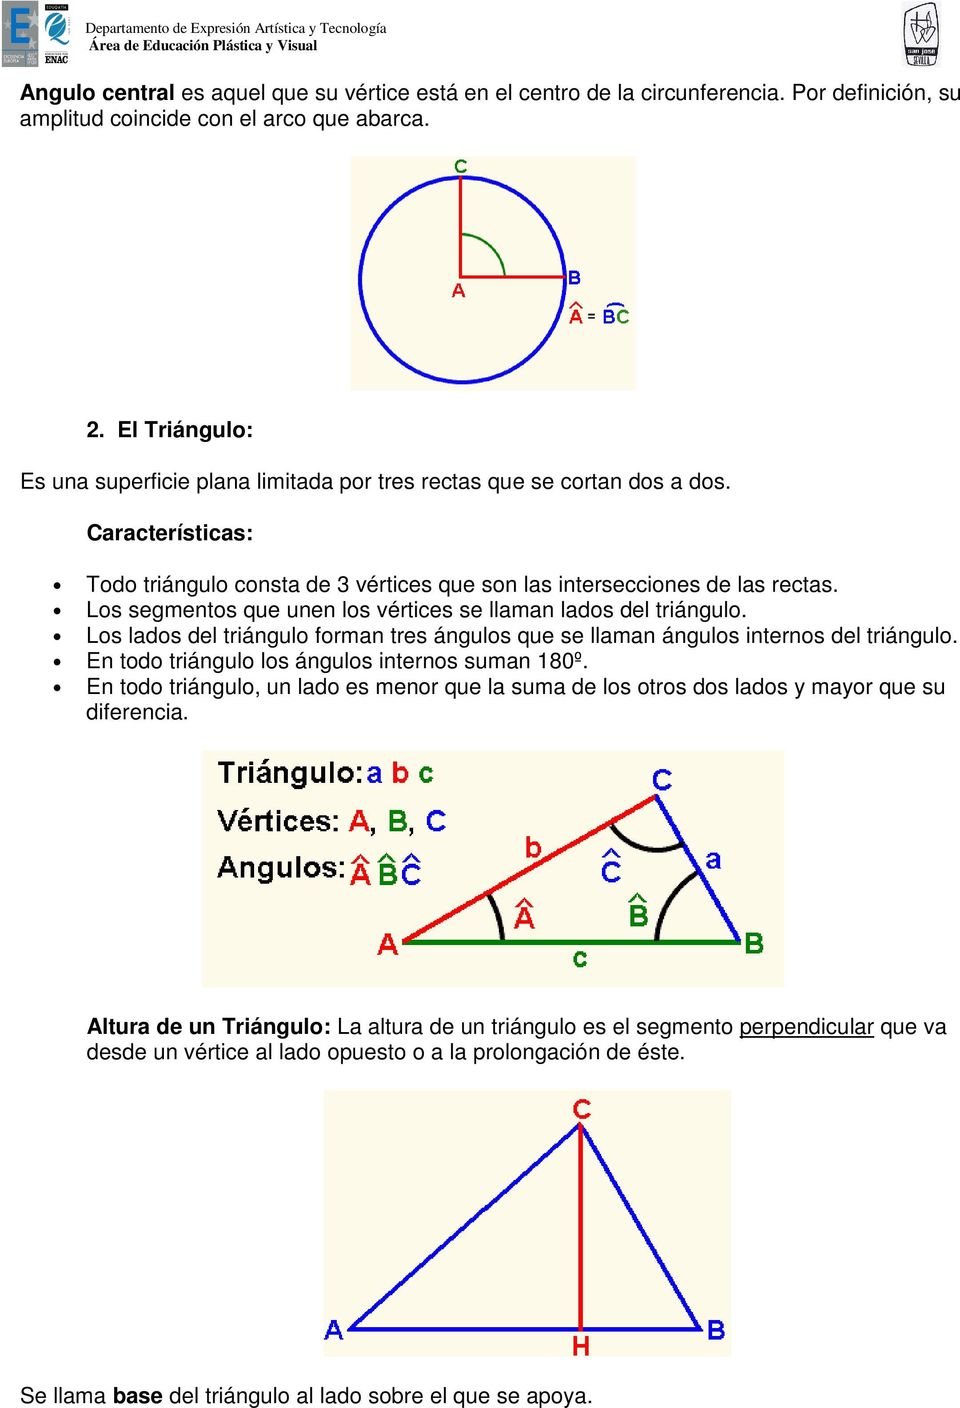 Los segmentos que unen los vértices se llaman lados del triángulo. Los lados del triángulo forman tres ángulos que se llaman ángulos internos del triángulo.